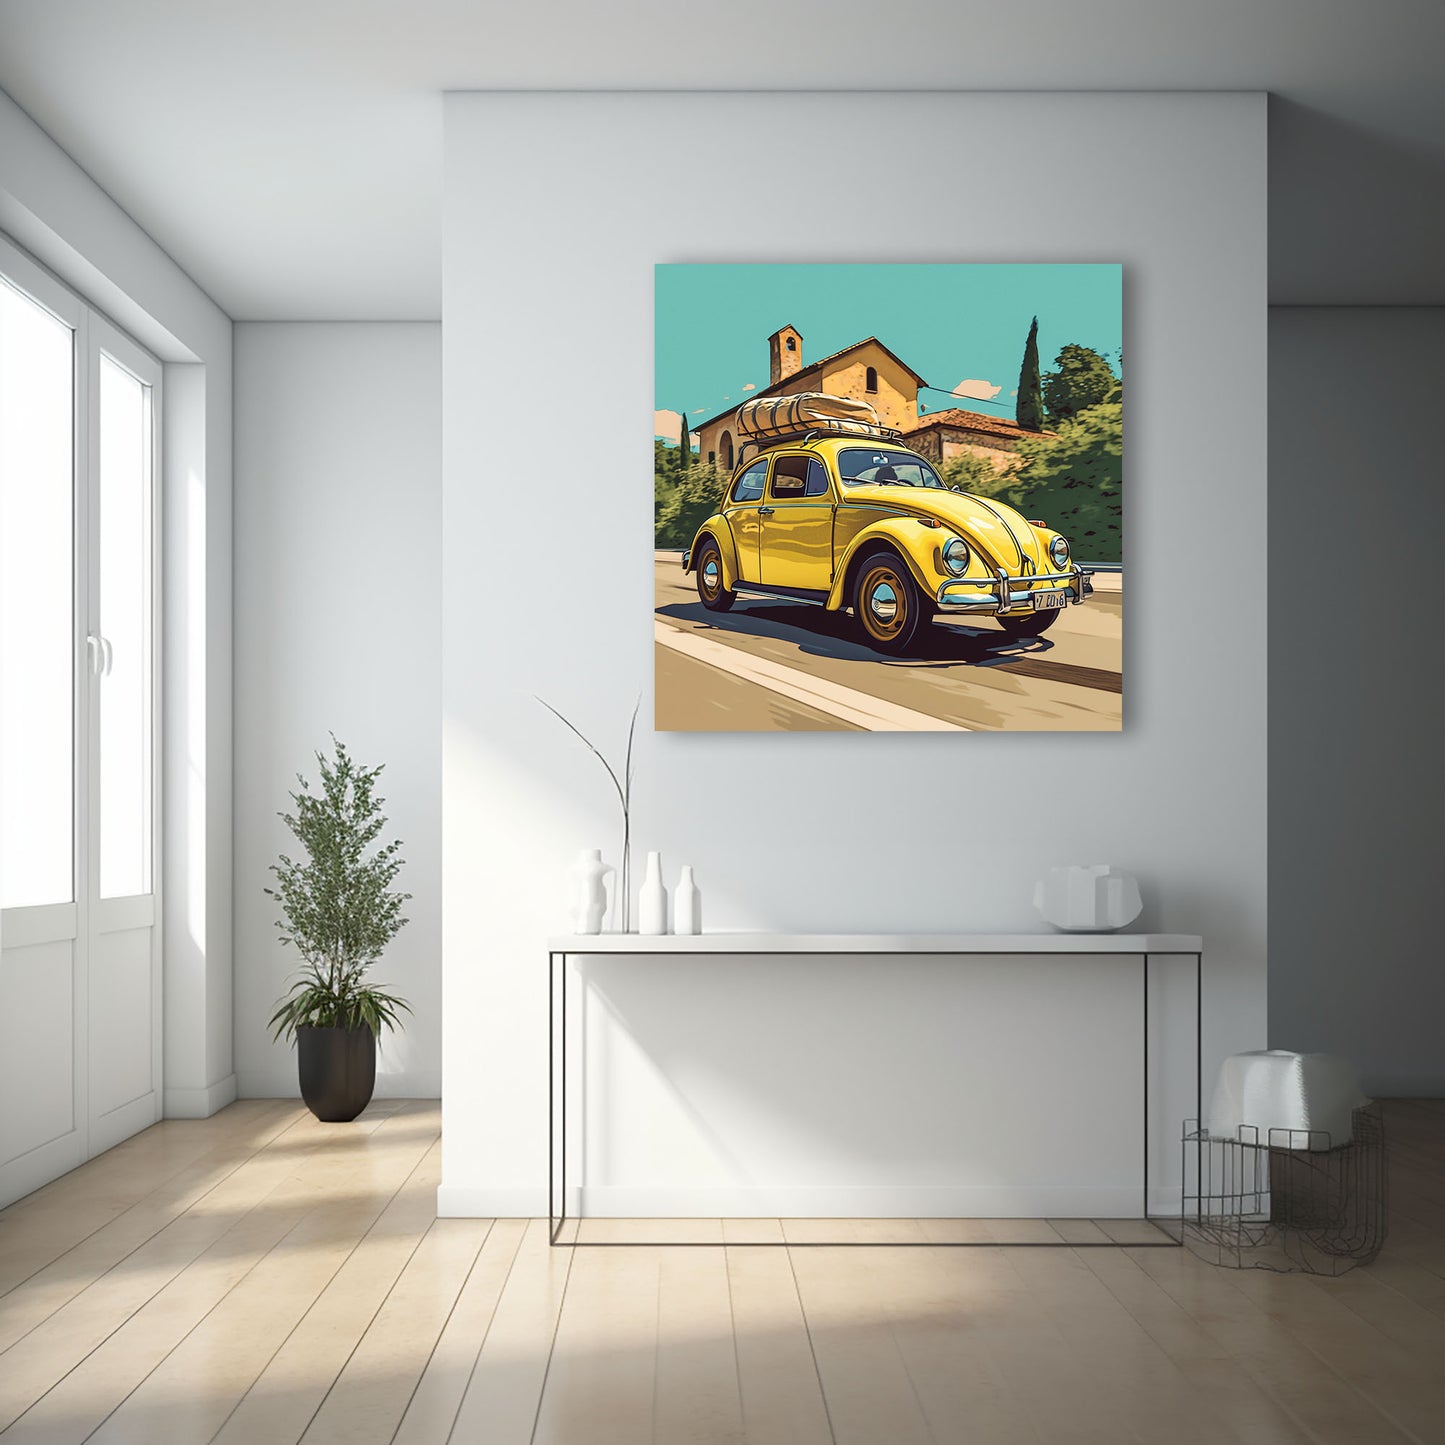 Imagen de un Volkswagen Beetle amarillo con equipaje en el techo, conduciendo por una carretera rural en la campiña, con colinas y casas al fondo bajo un cielo parcialmente nublado.